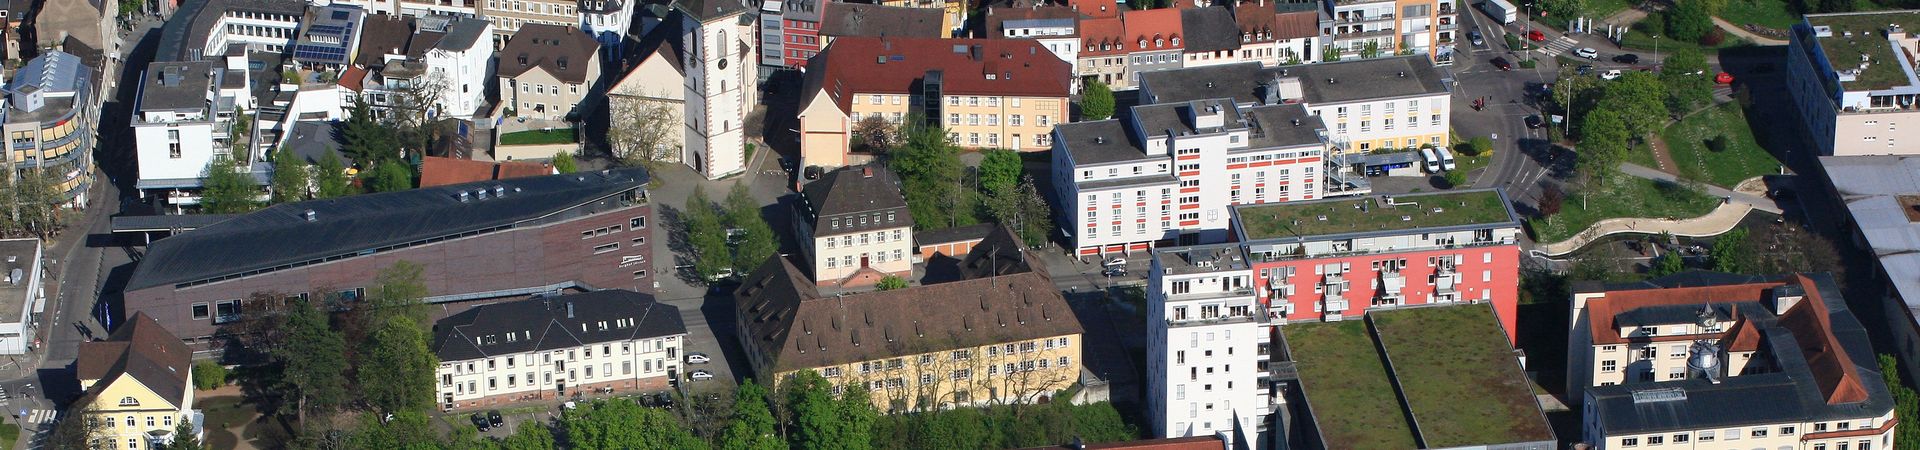 Blick auf Burghof, Stadtkirche, 3LM, Polizeipräsidium